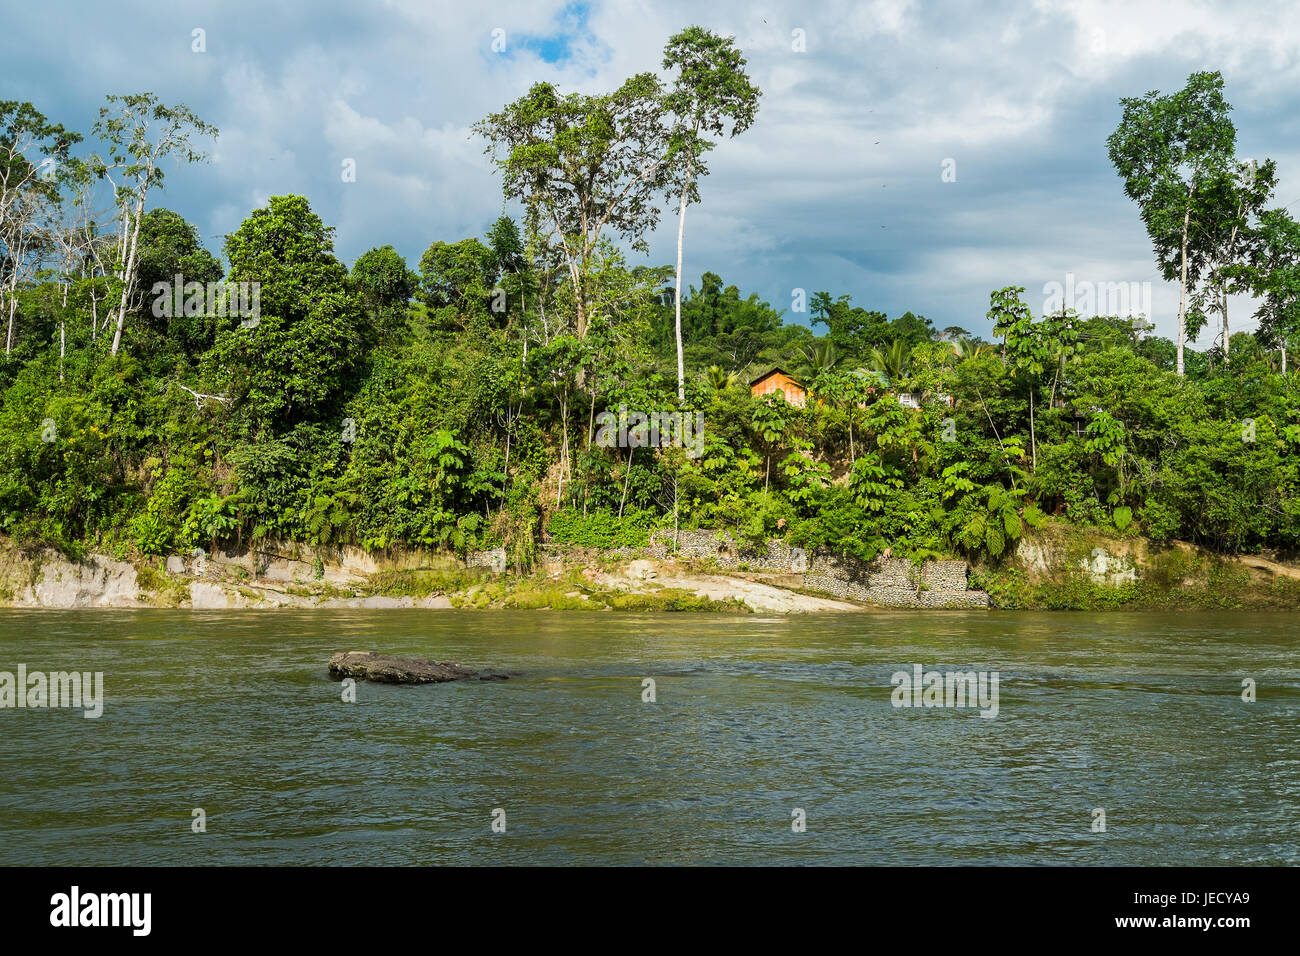 Rio Napo in Misahualli, Amazon, Ecuador Stock Photo - Alamy